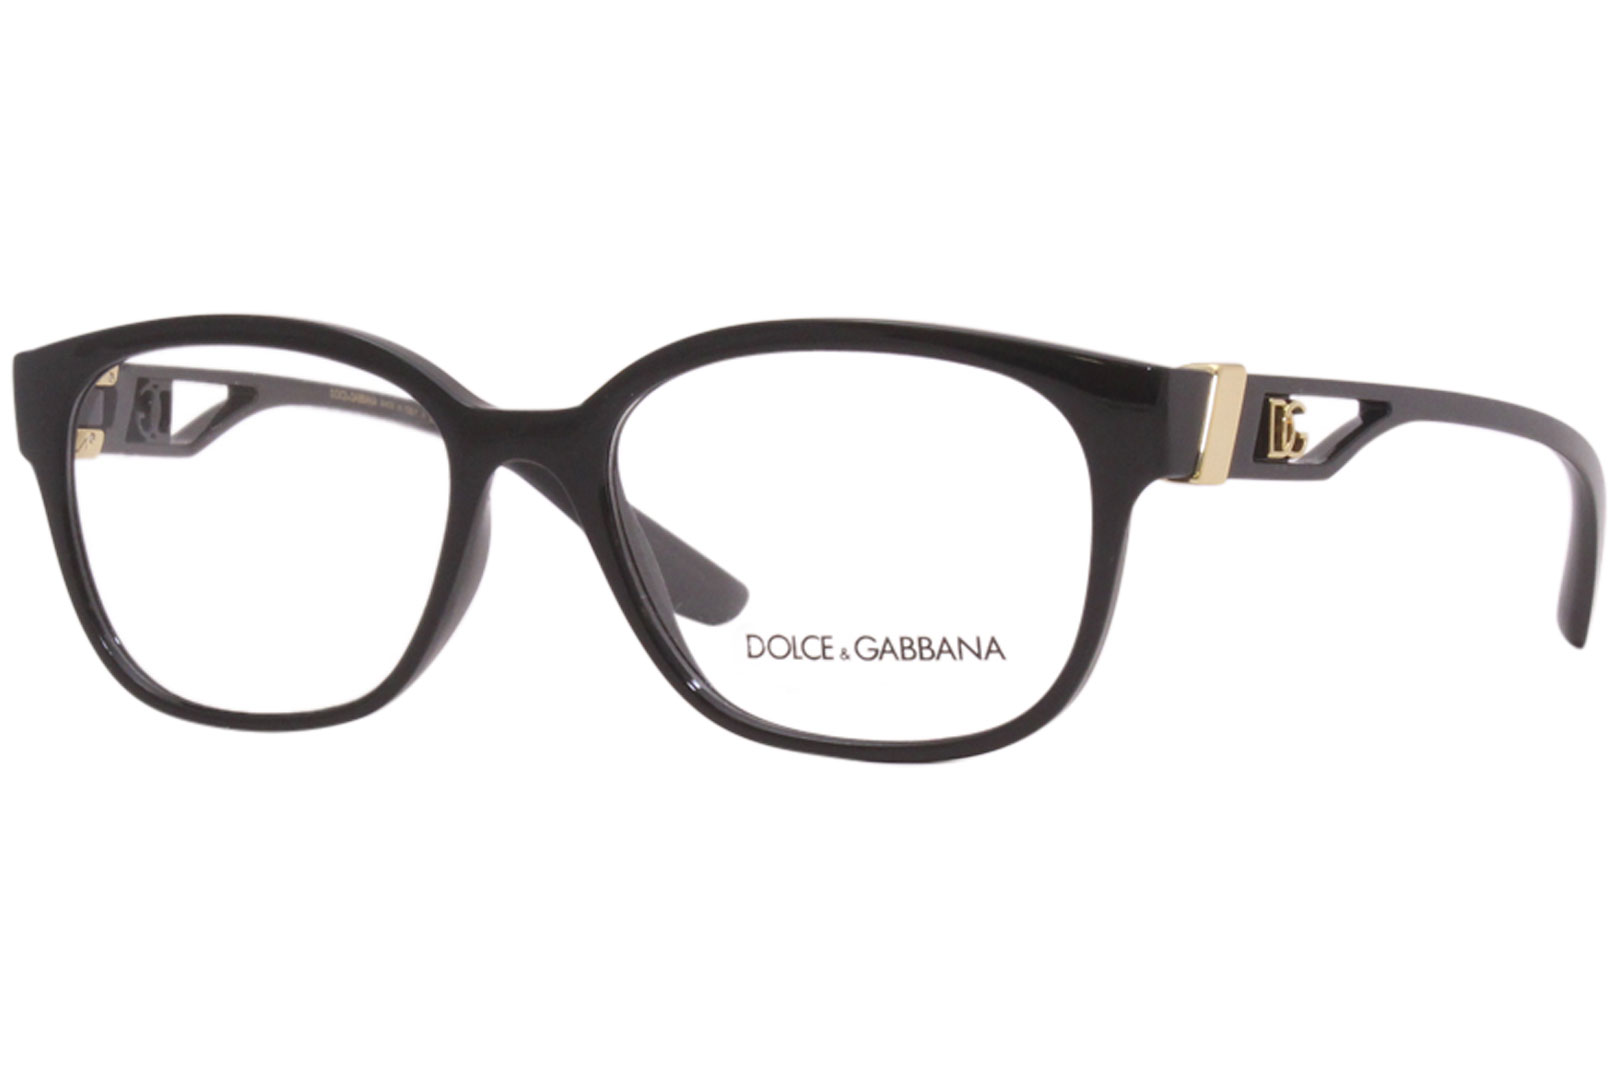 Dolce & Gabbana DG5066 Eyeglasses Women's Full Rim Square Optical Frame ...